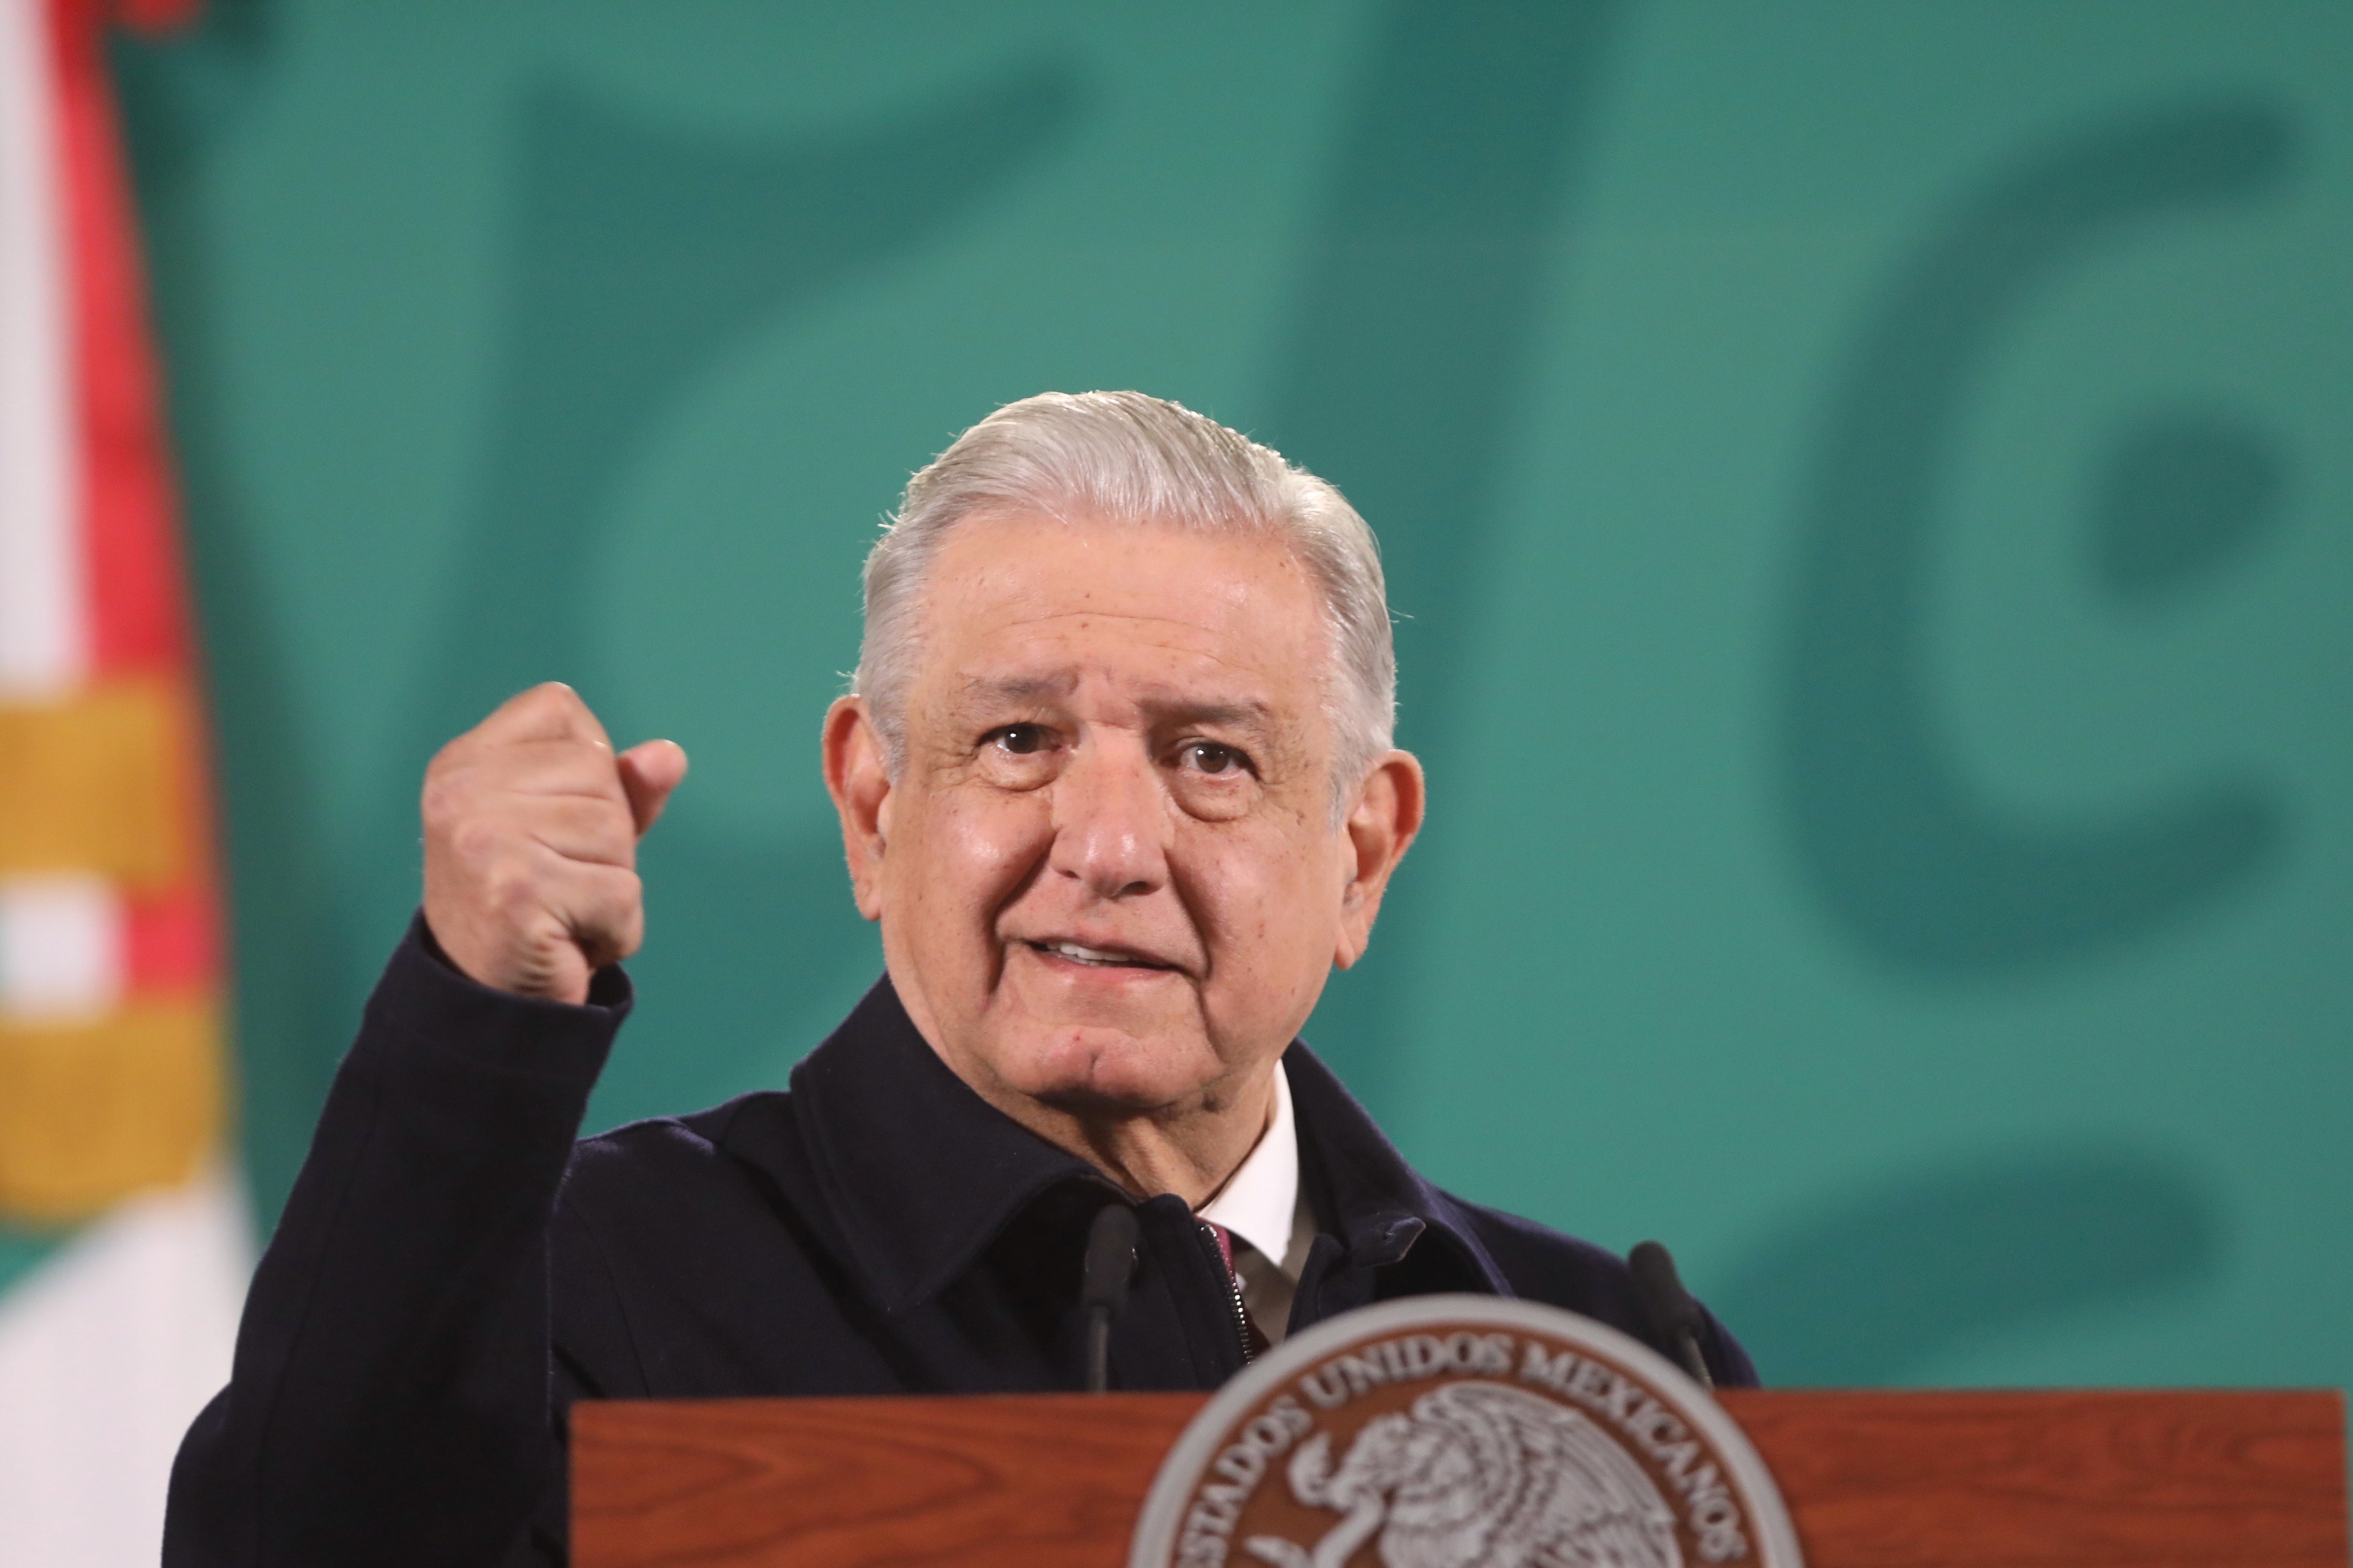 El viernes pasado, López Obrador se realizó un cateterismo cardíaco el cual permite diagnosticar con precisión la enfermedad de las arterias, las válvulas y las cavidades del corazón (Foto: EFE/Sáshenka Gutiérrez)
